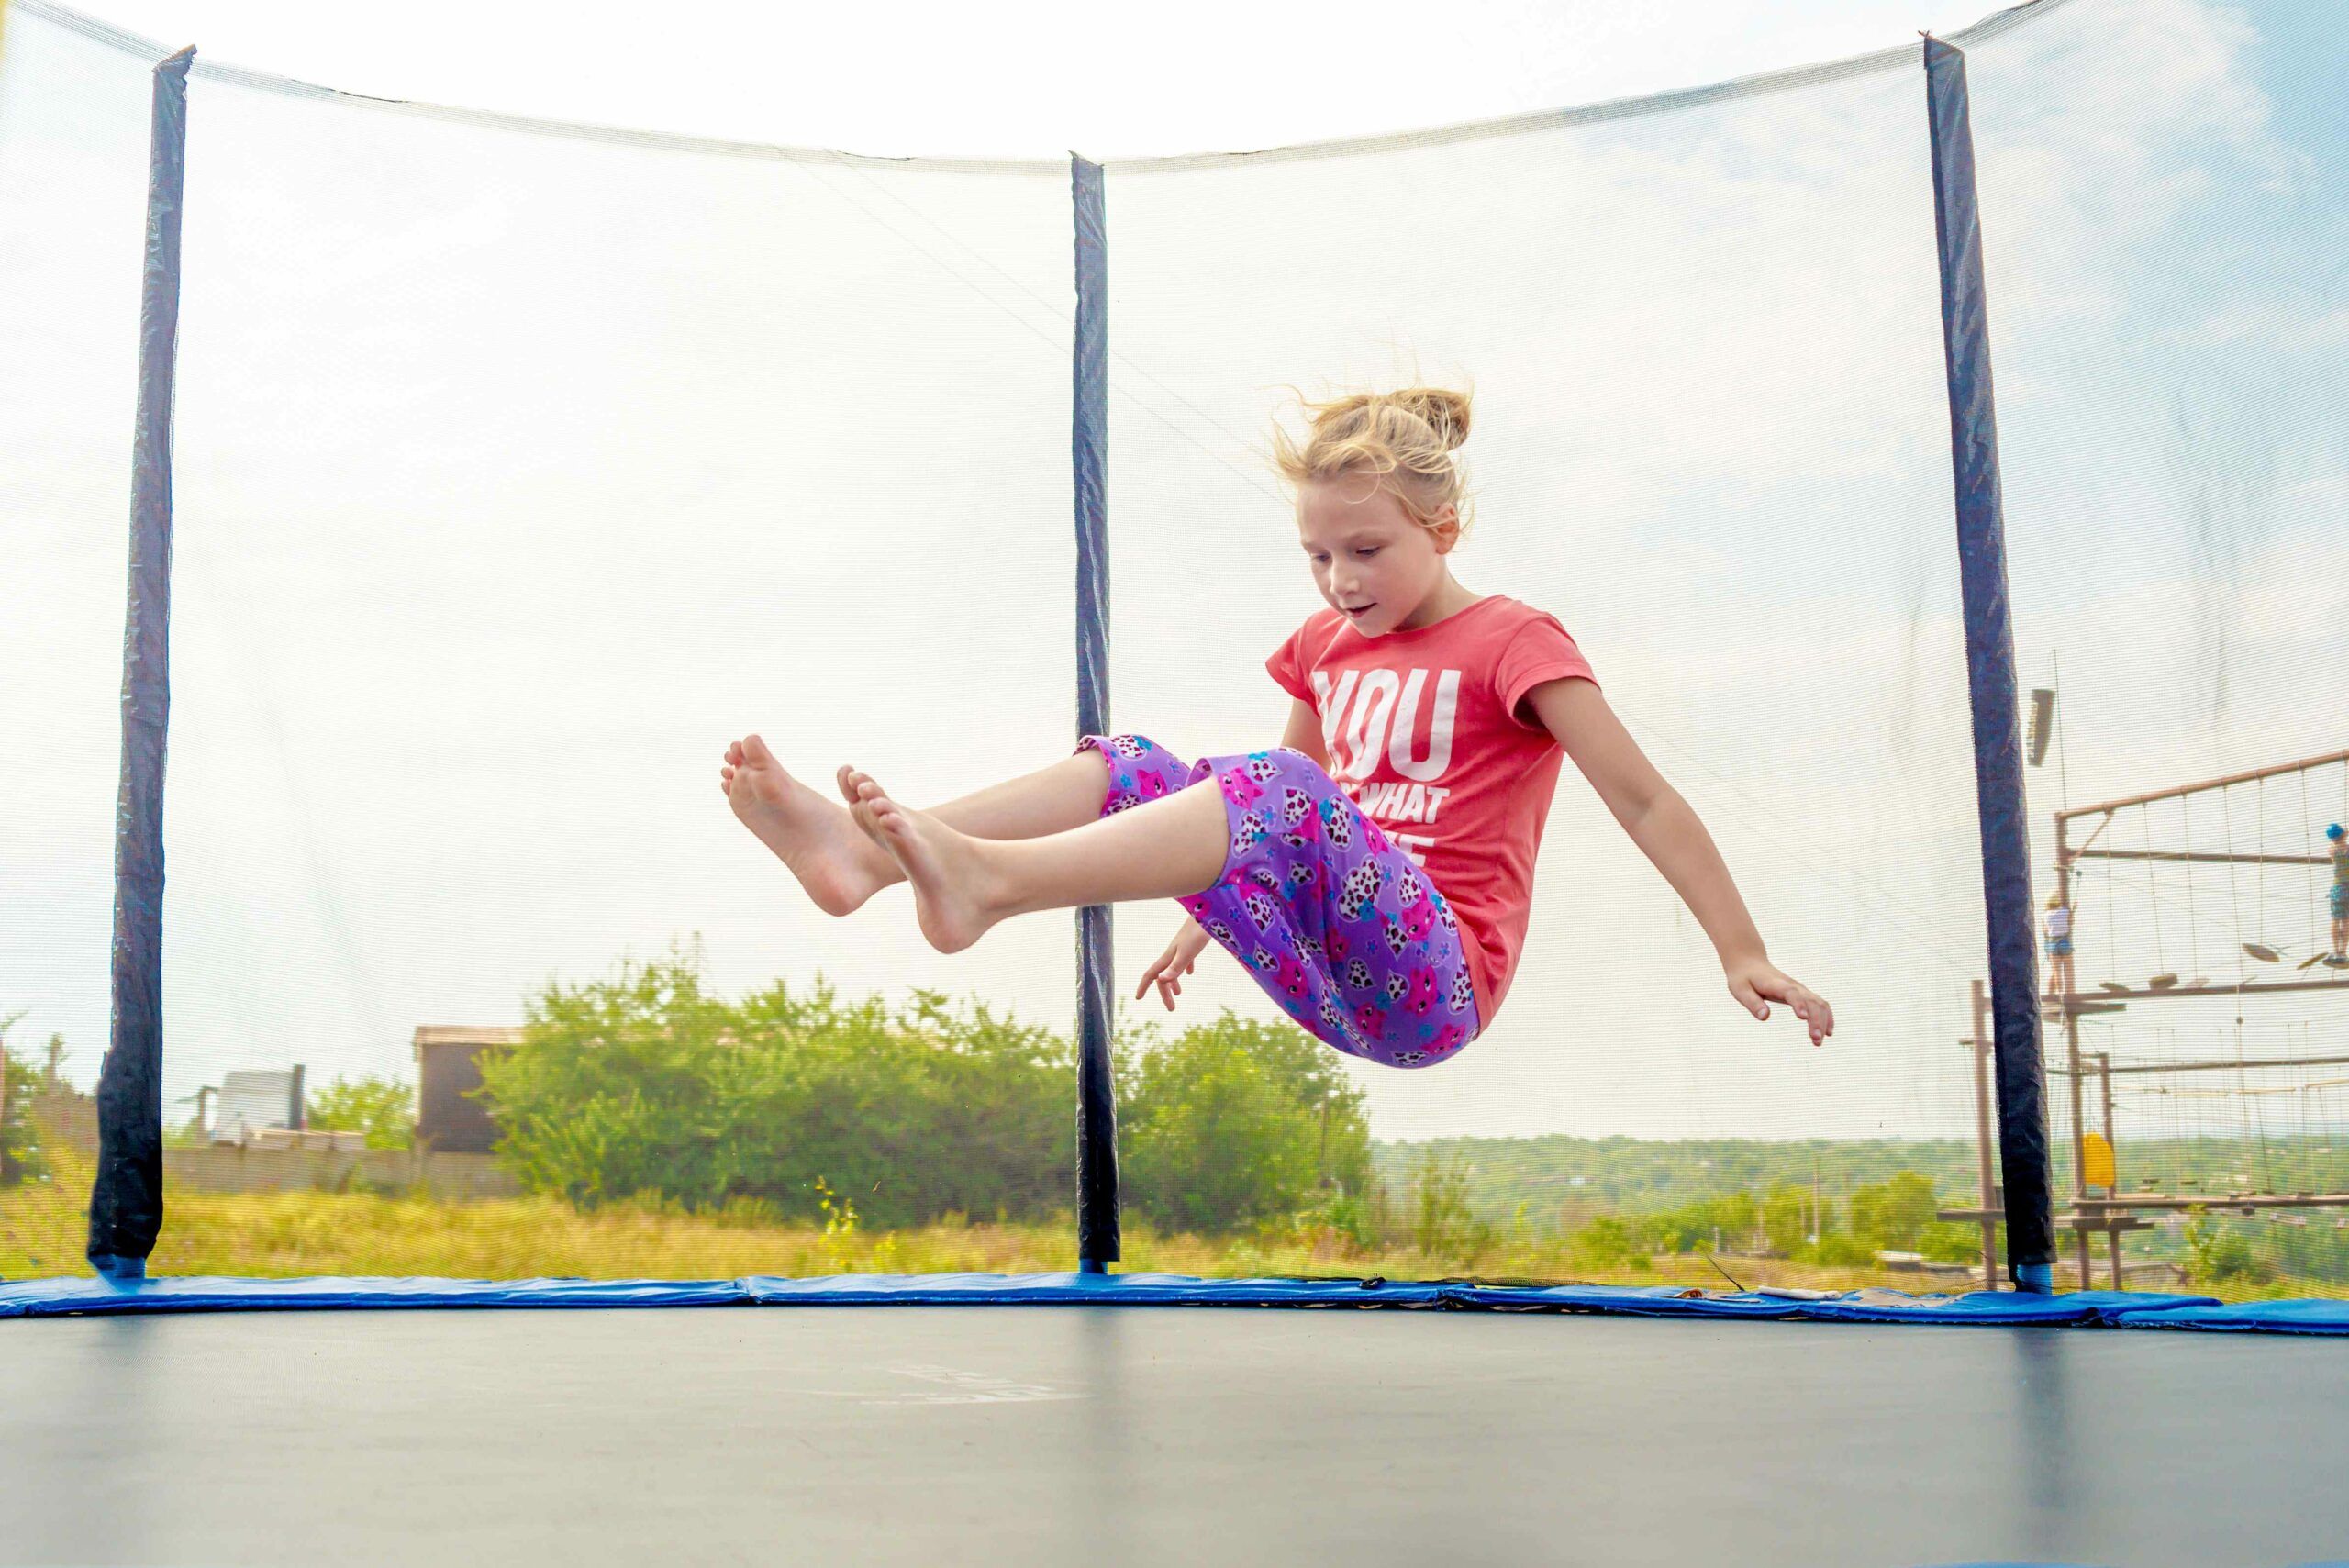 Quale dimensione del trampolino scegliere per 2 bambini in base alla loro  età?